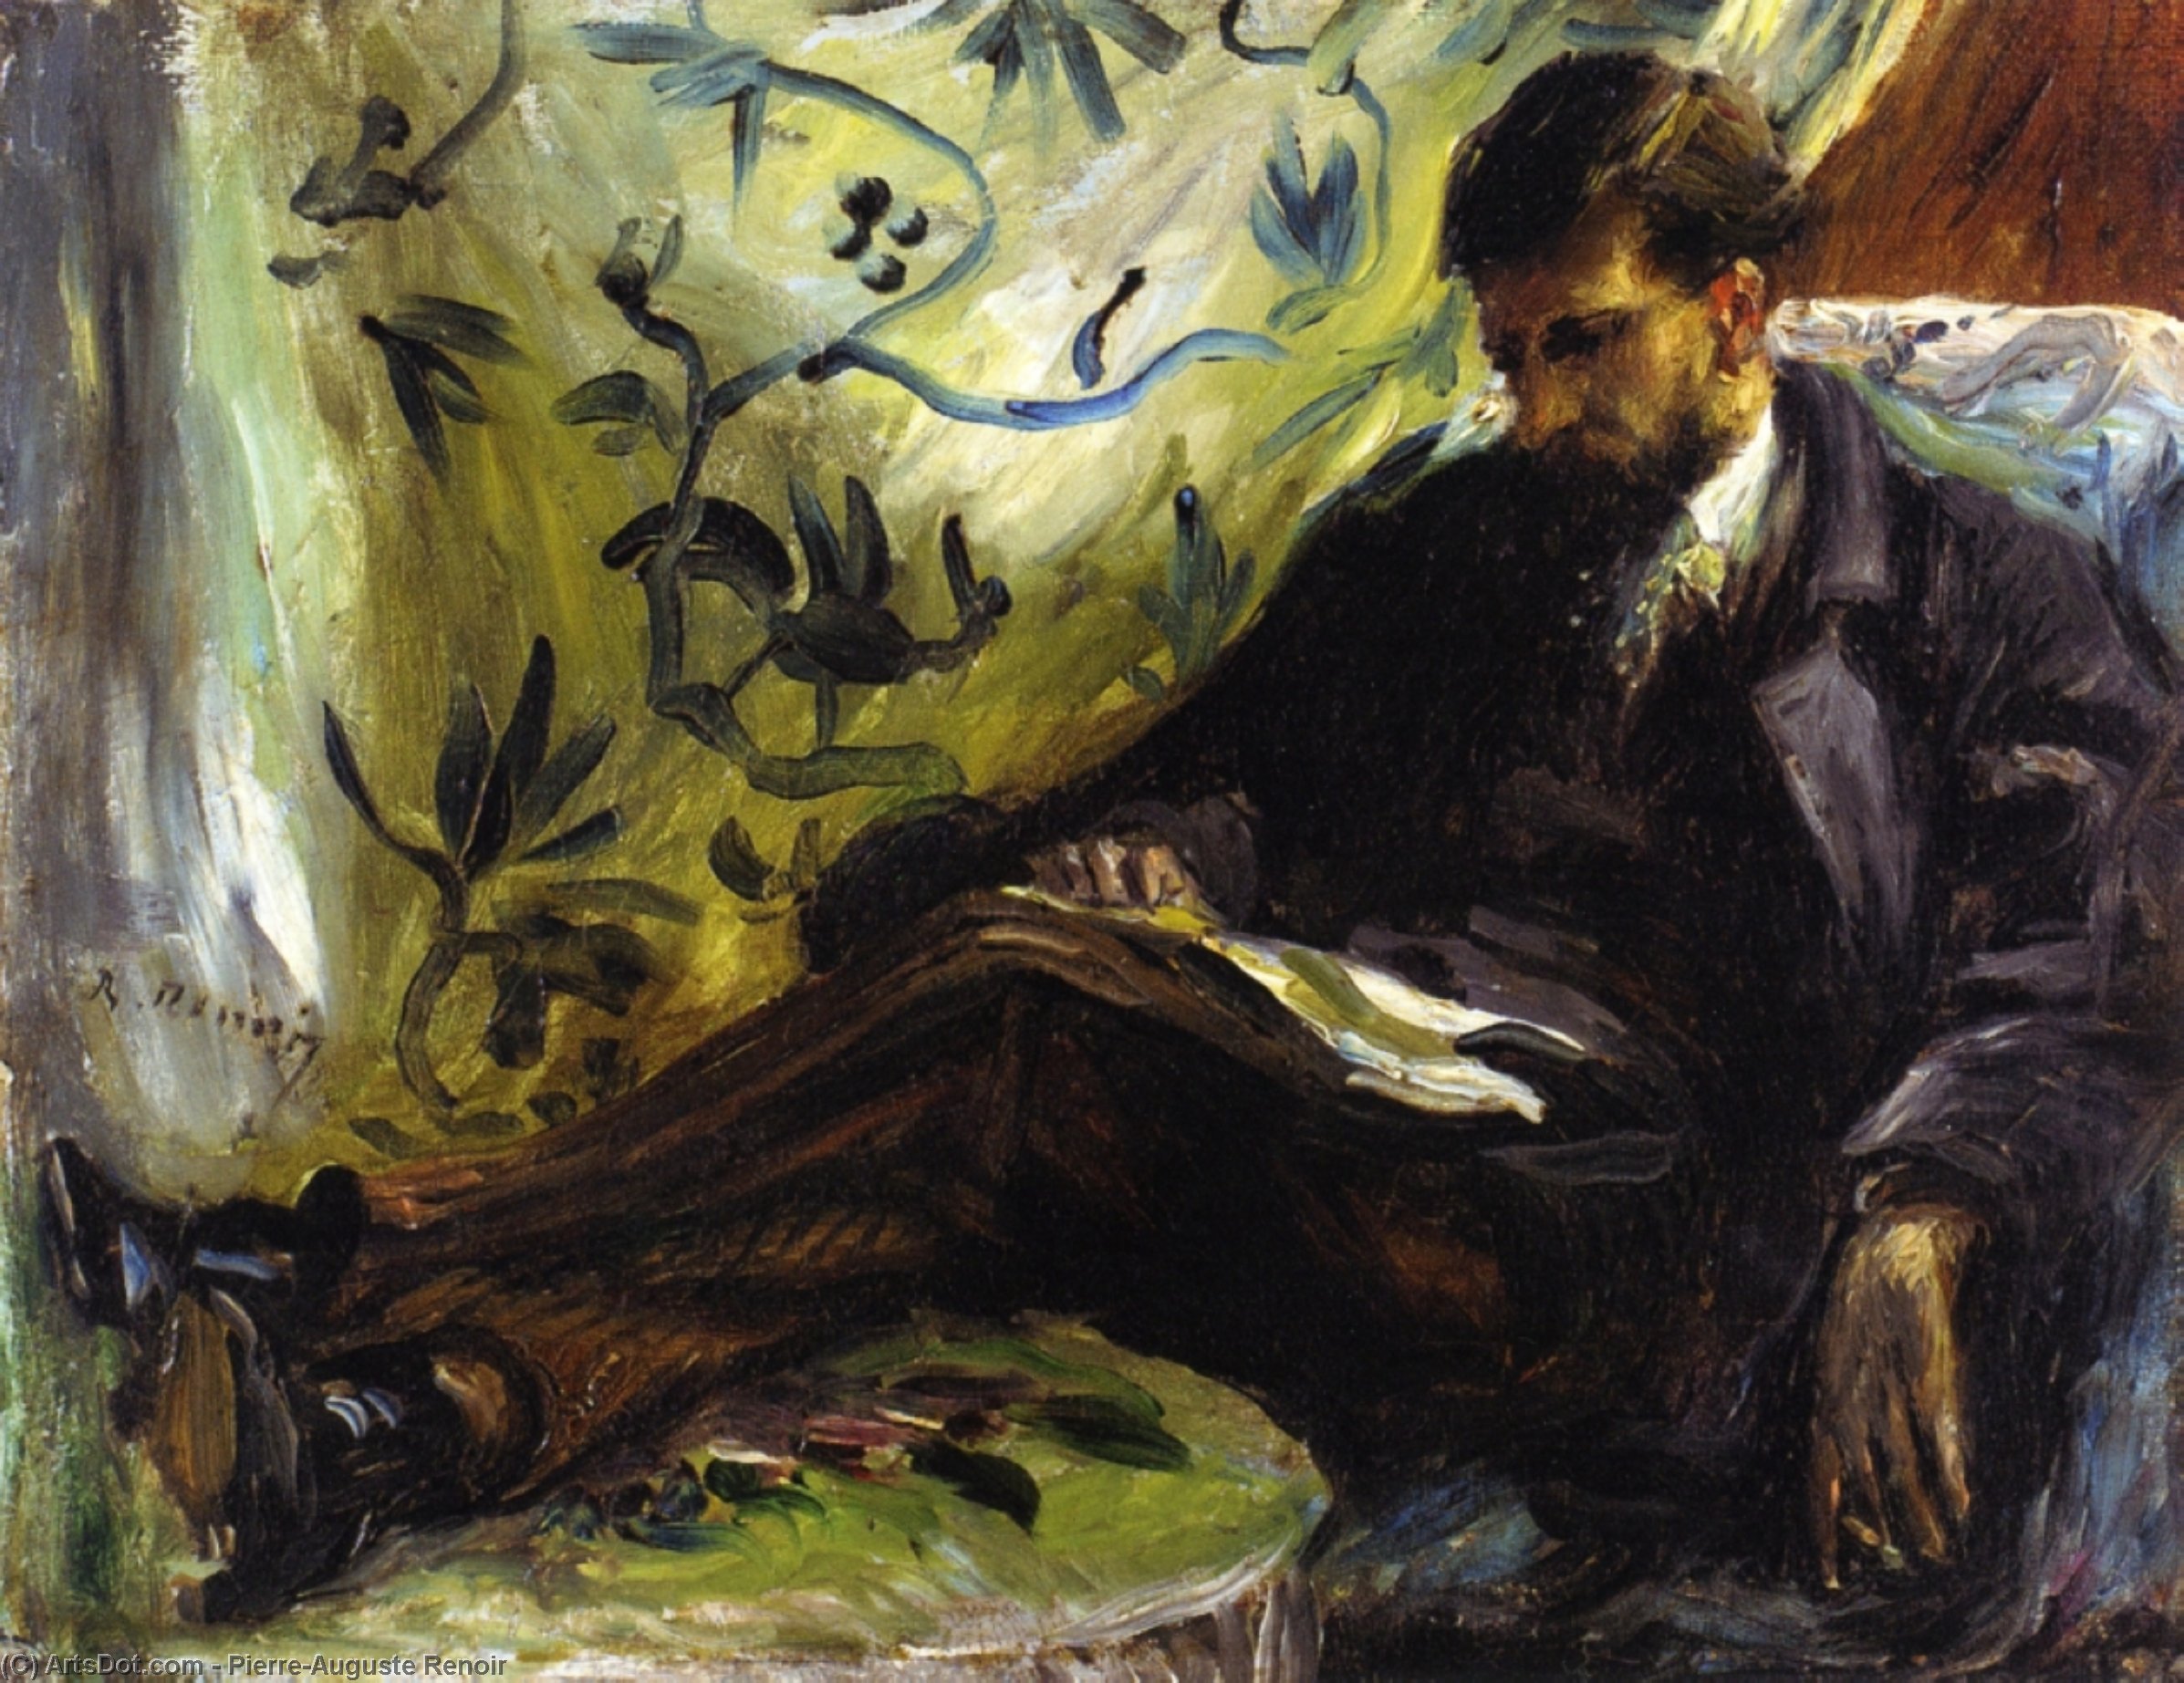 WikiOO.org - אנציקלופדיה לאמנויות יפות - ציור, יצירות אמנות Pierre-Auguste Renoir - Portrait of Edmond Maitre (also known as The Reader)